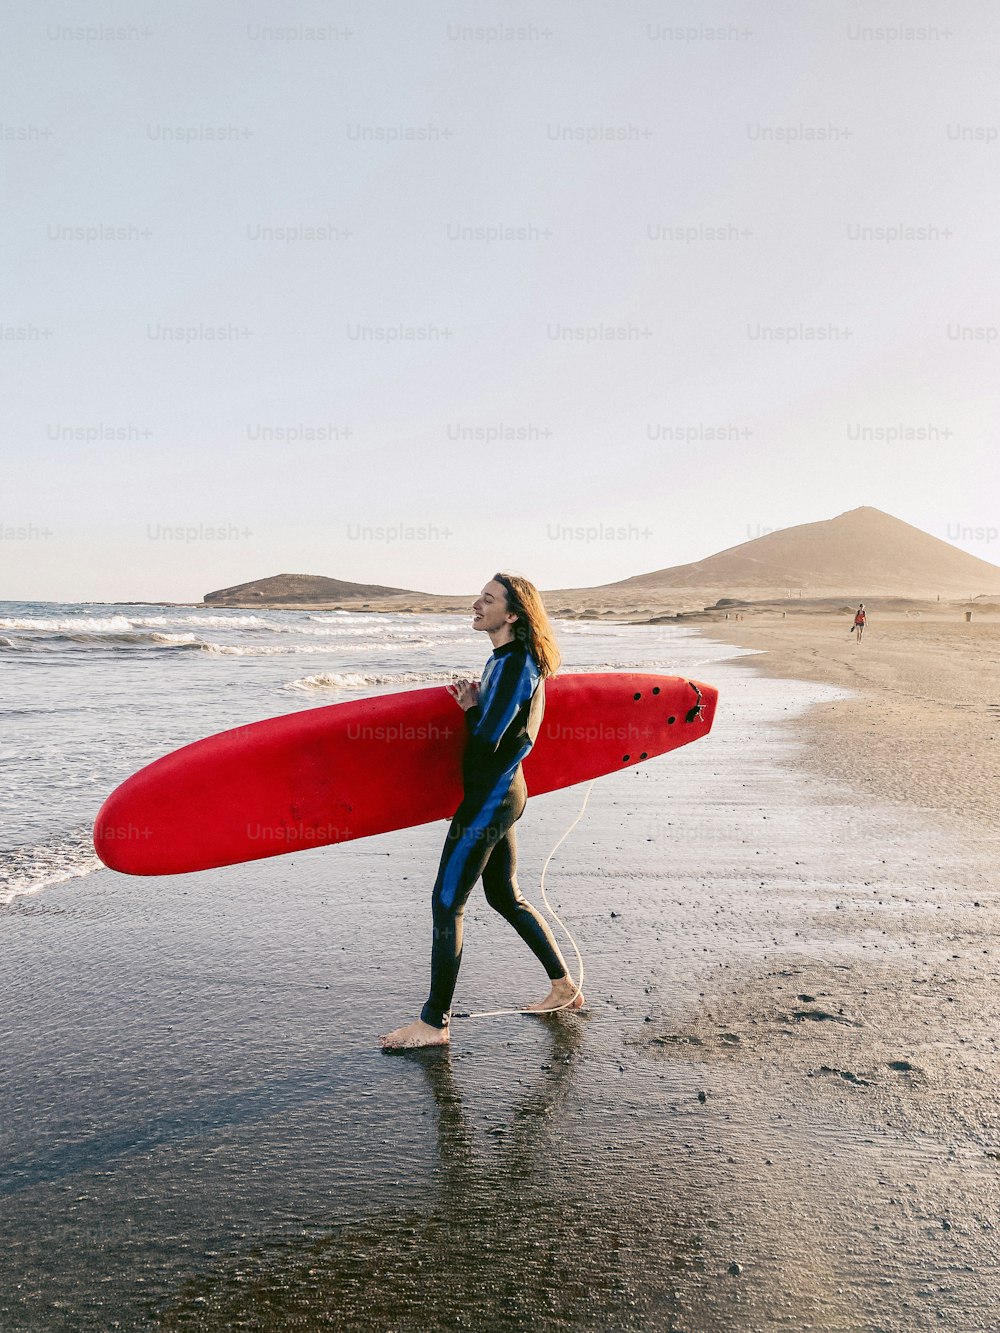 Giovane surfista che cammina con la tavola da surf sulla spiaggia. Immagine scattata con il cellulare